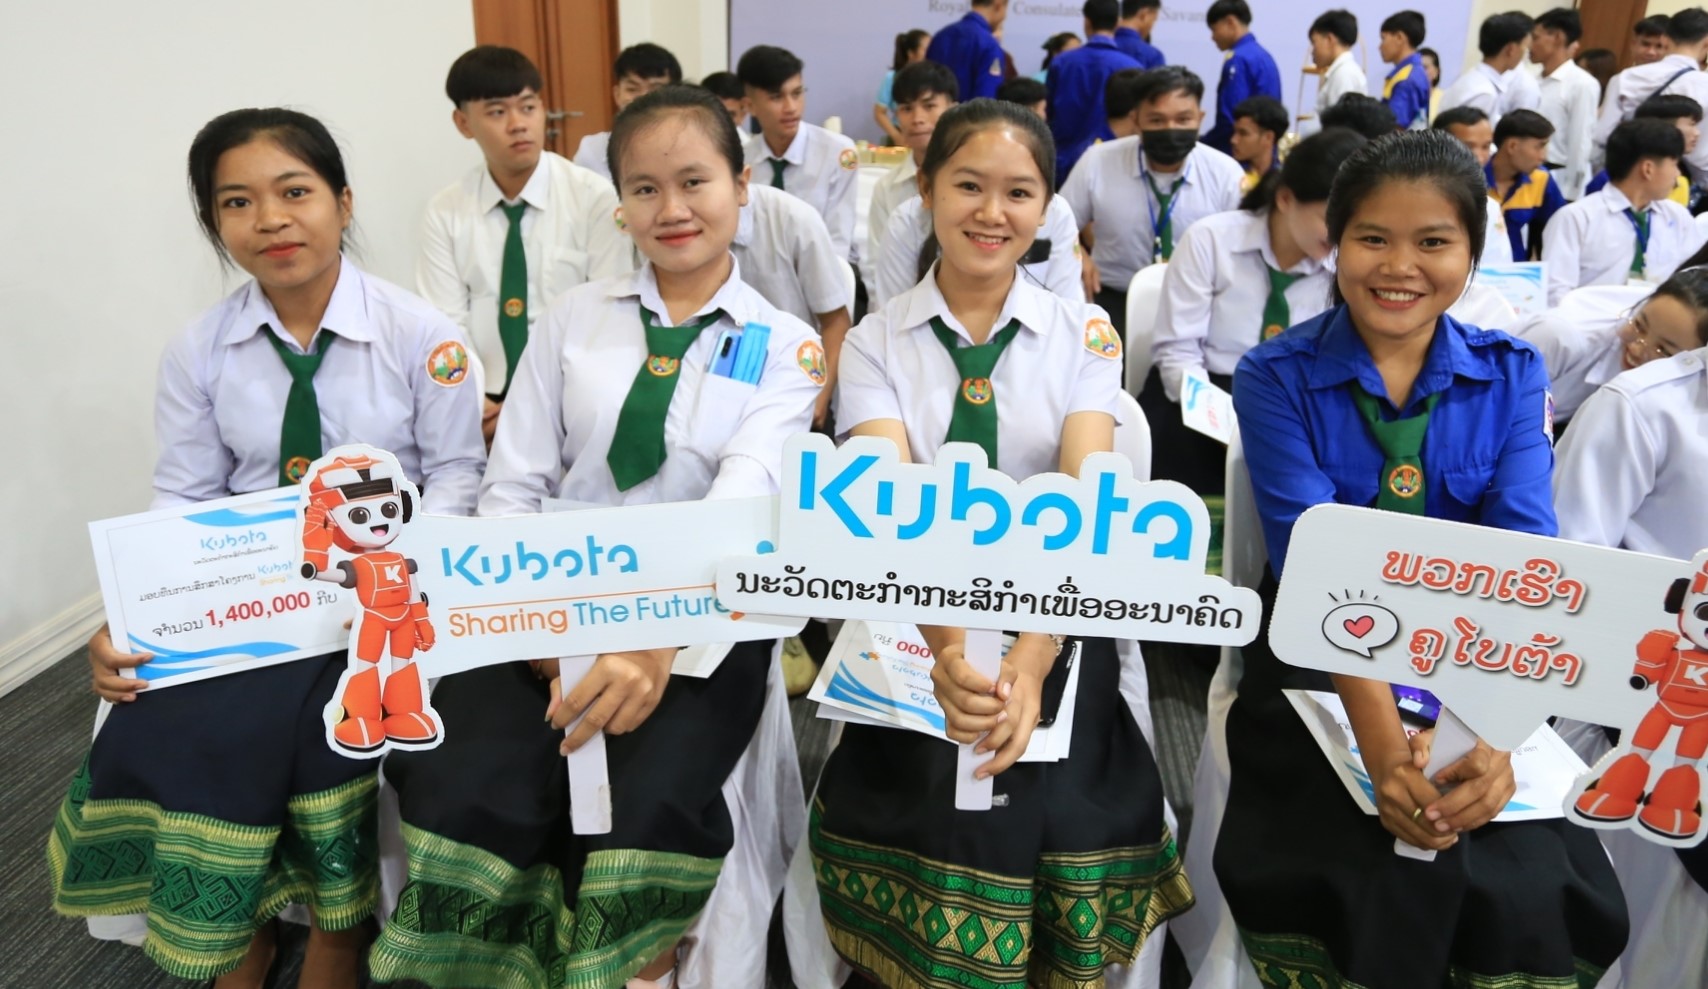 สยามคูโบต้า และคูโบต้าลาว ร่วมกับ  สถานกงสุลใหญ่แห่งราชอาณาจักรไทย ประจำแขวงสะหวันนะเขต   มอบทุนกว่า 120,000,000 กีบ เติมเต็มโอกาสและคุณภาพชีวิตการศึกษาแก่เยาวชน